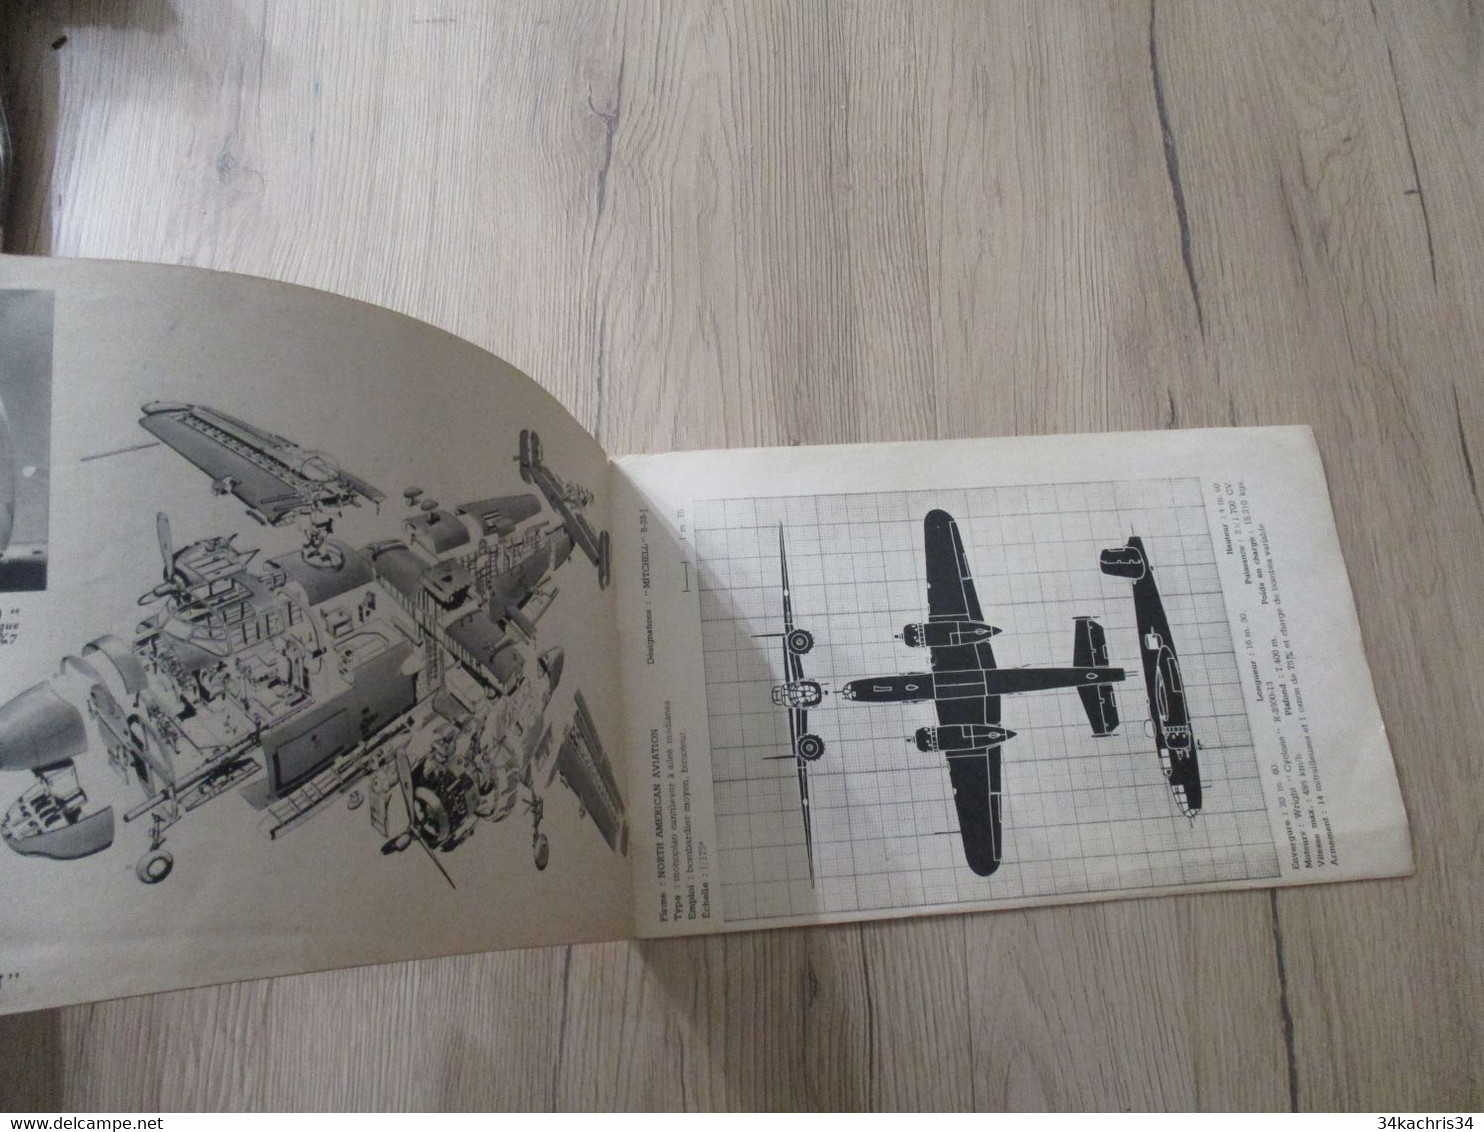 Catalogue Avions américains fascicule N°2 France Editions Presse 1945 Photos plans caractéristiques